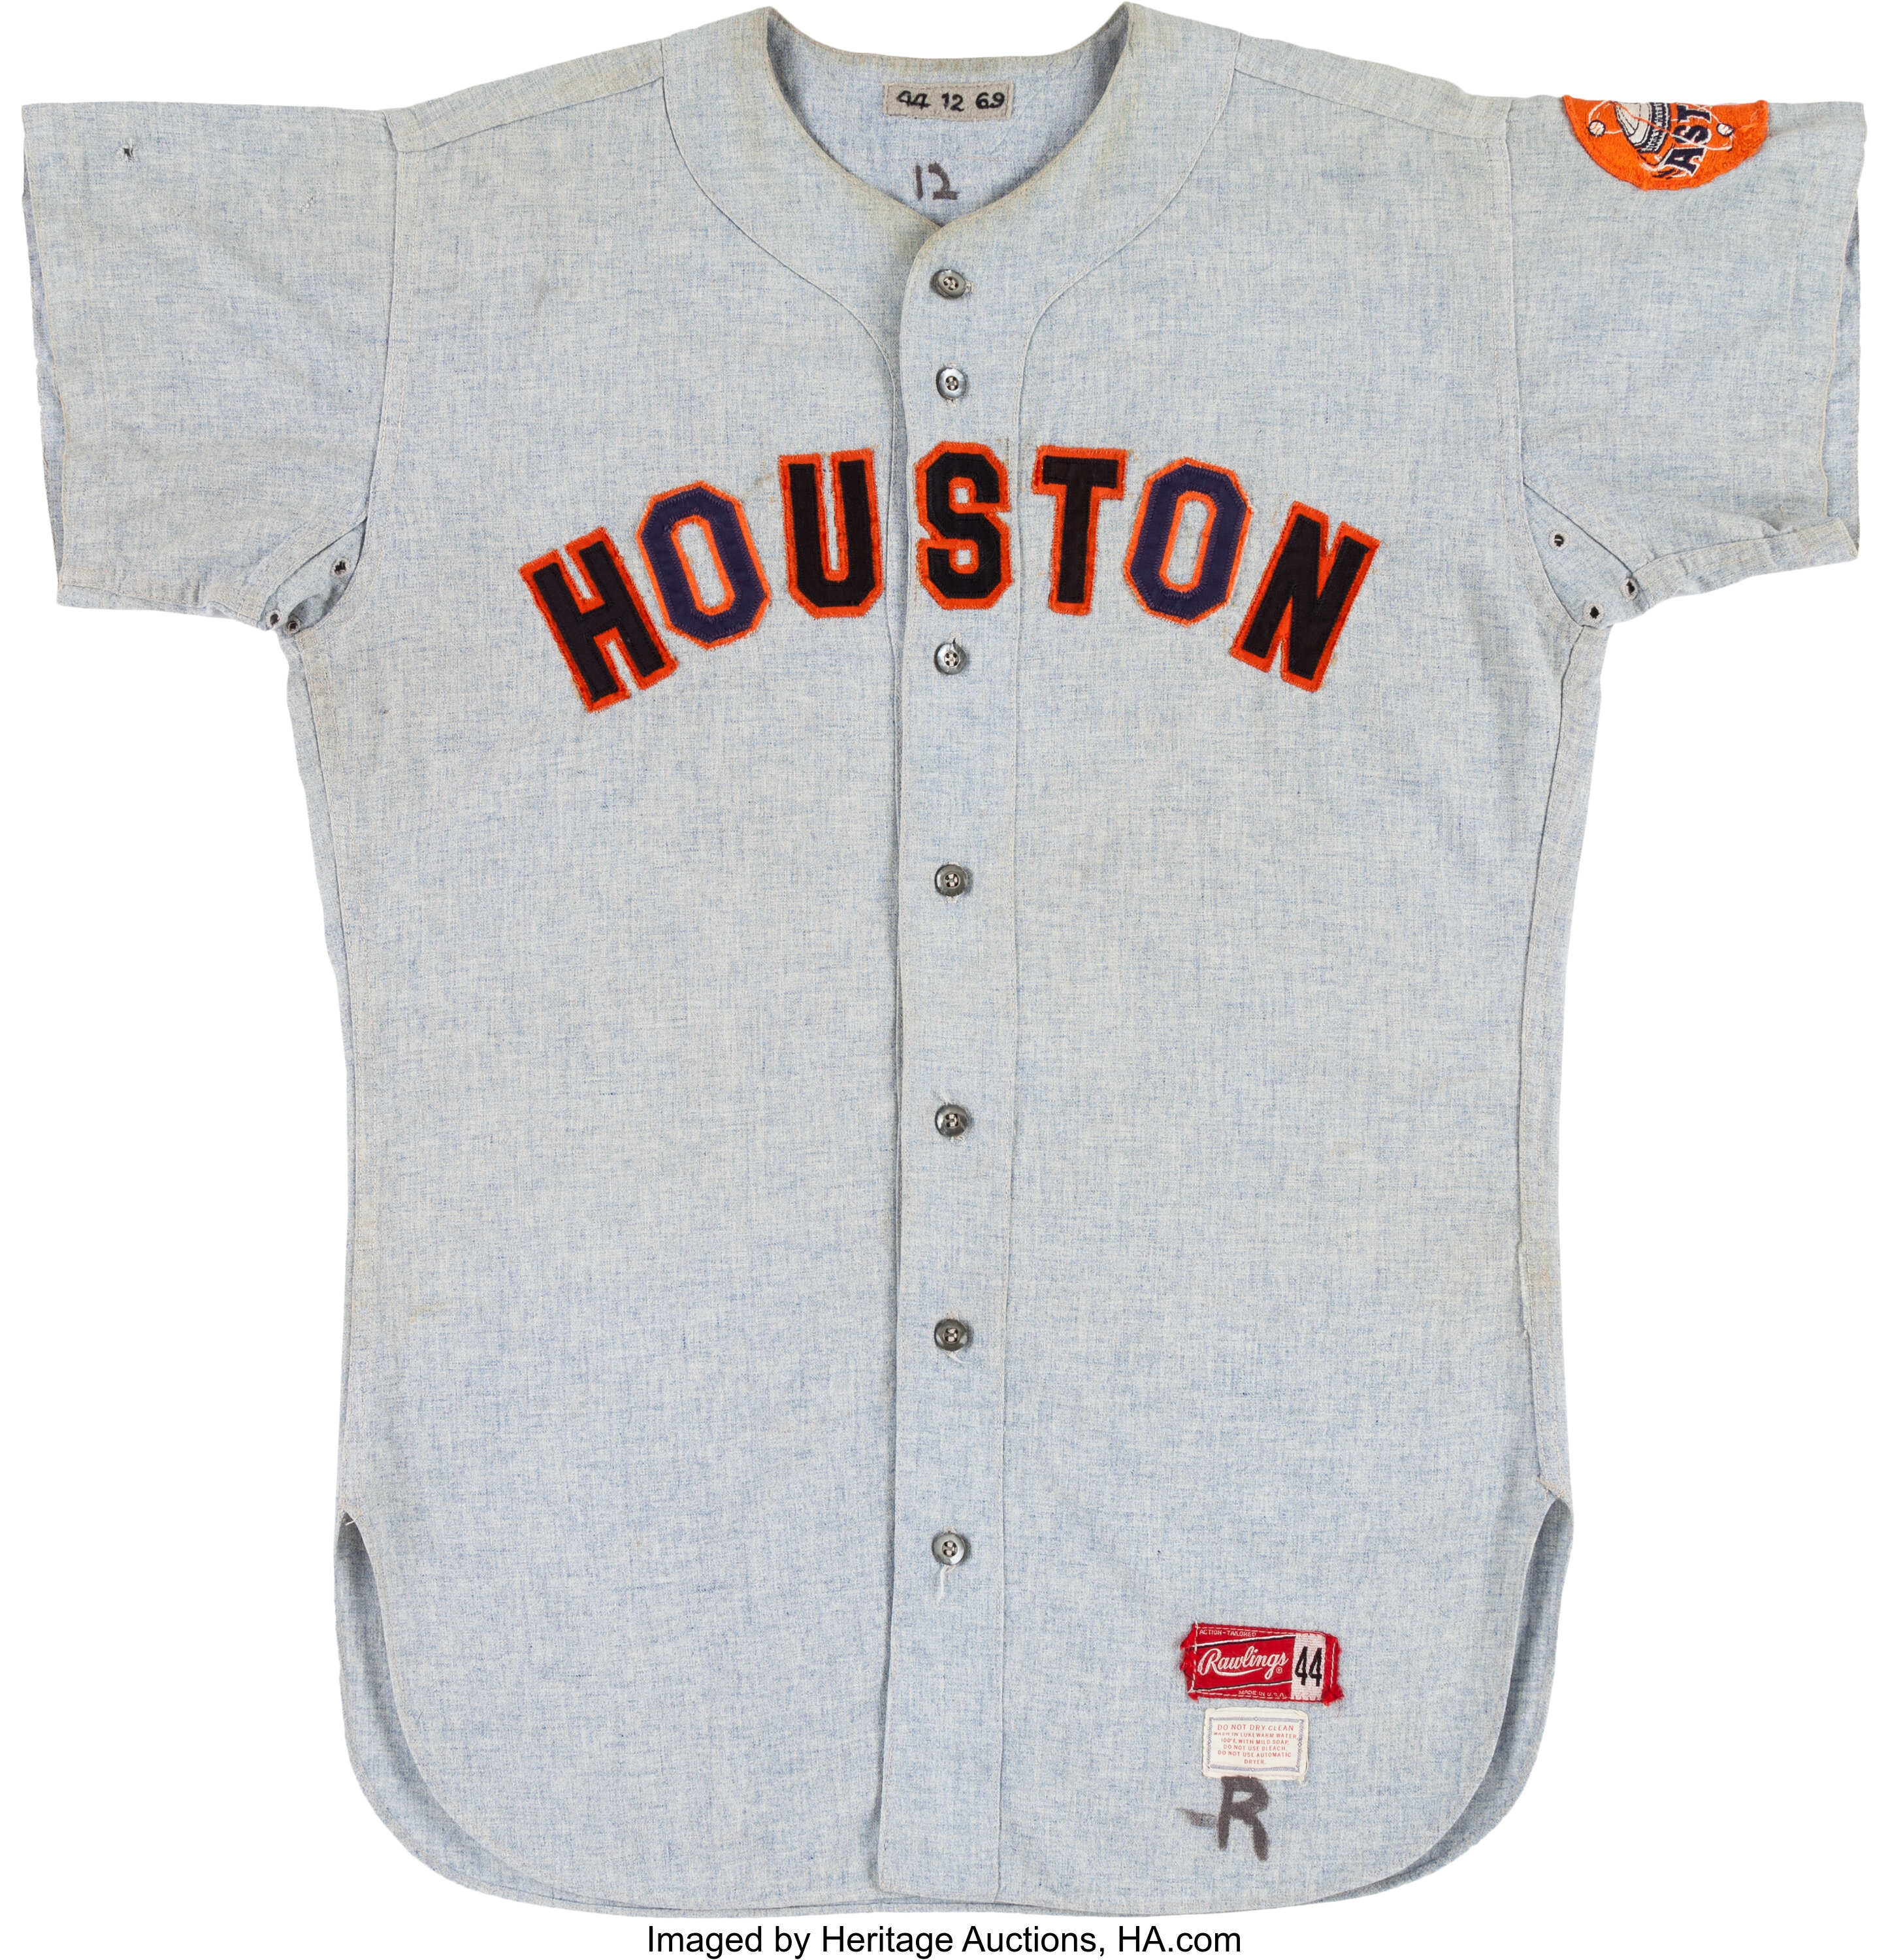 Doug Rader Houston Astros Women's Navy Roster Name & Number T-Shirt 